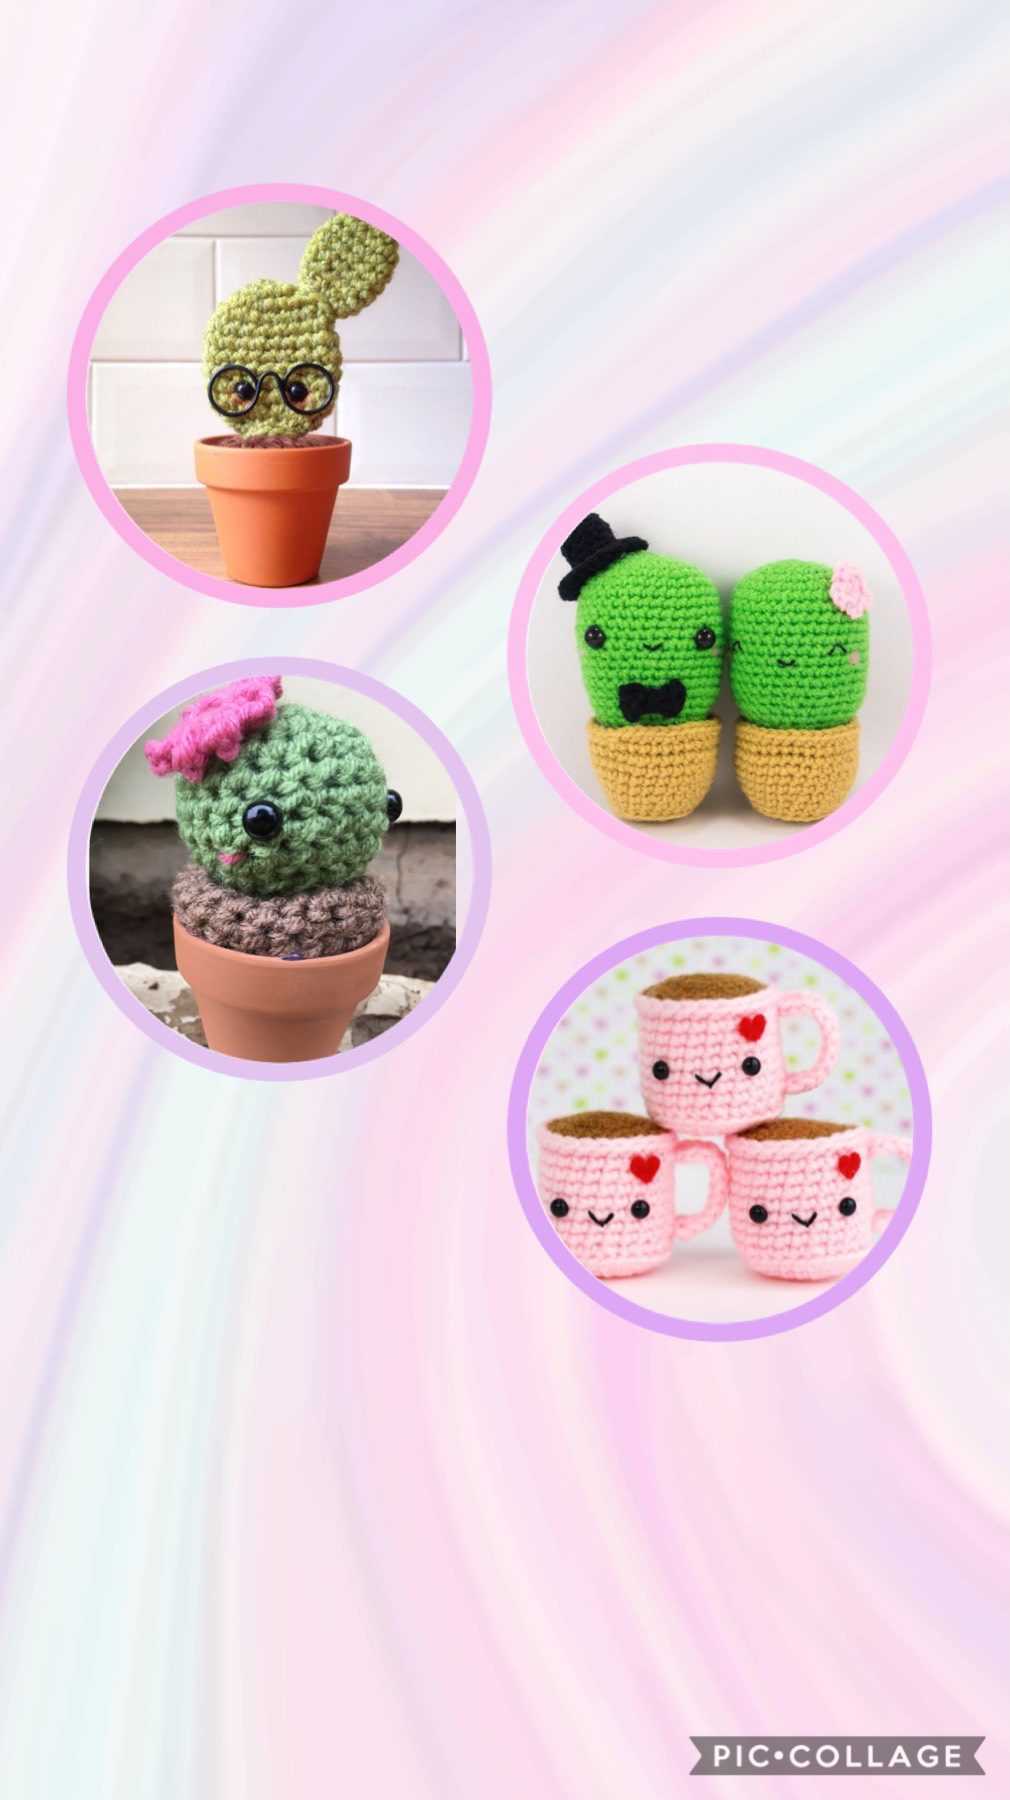 Cactus fun!